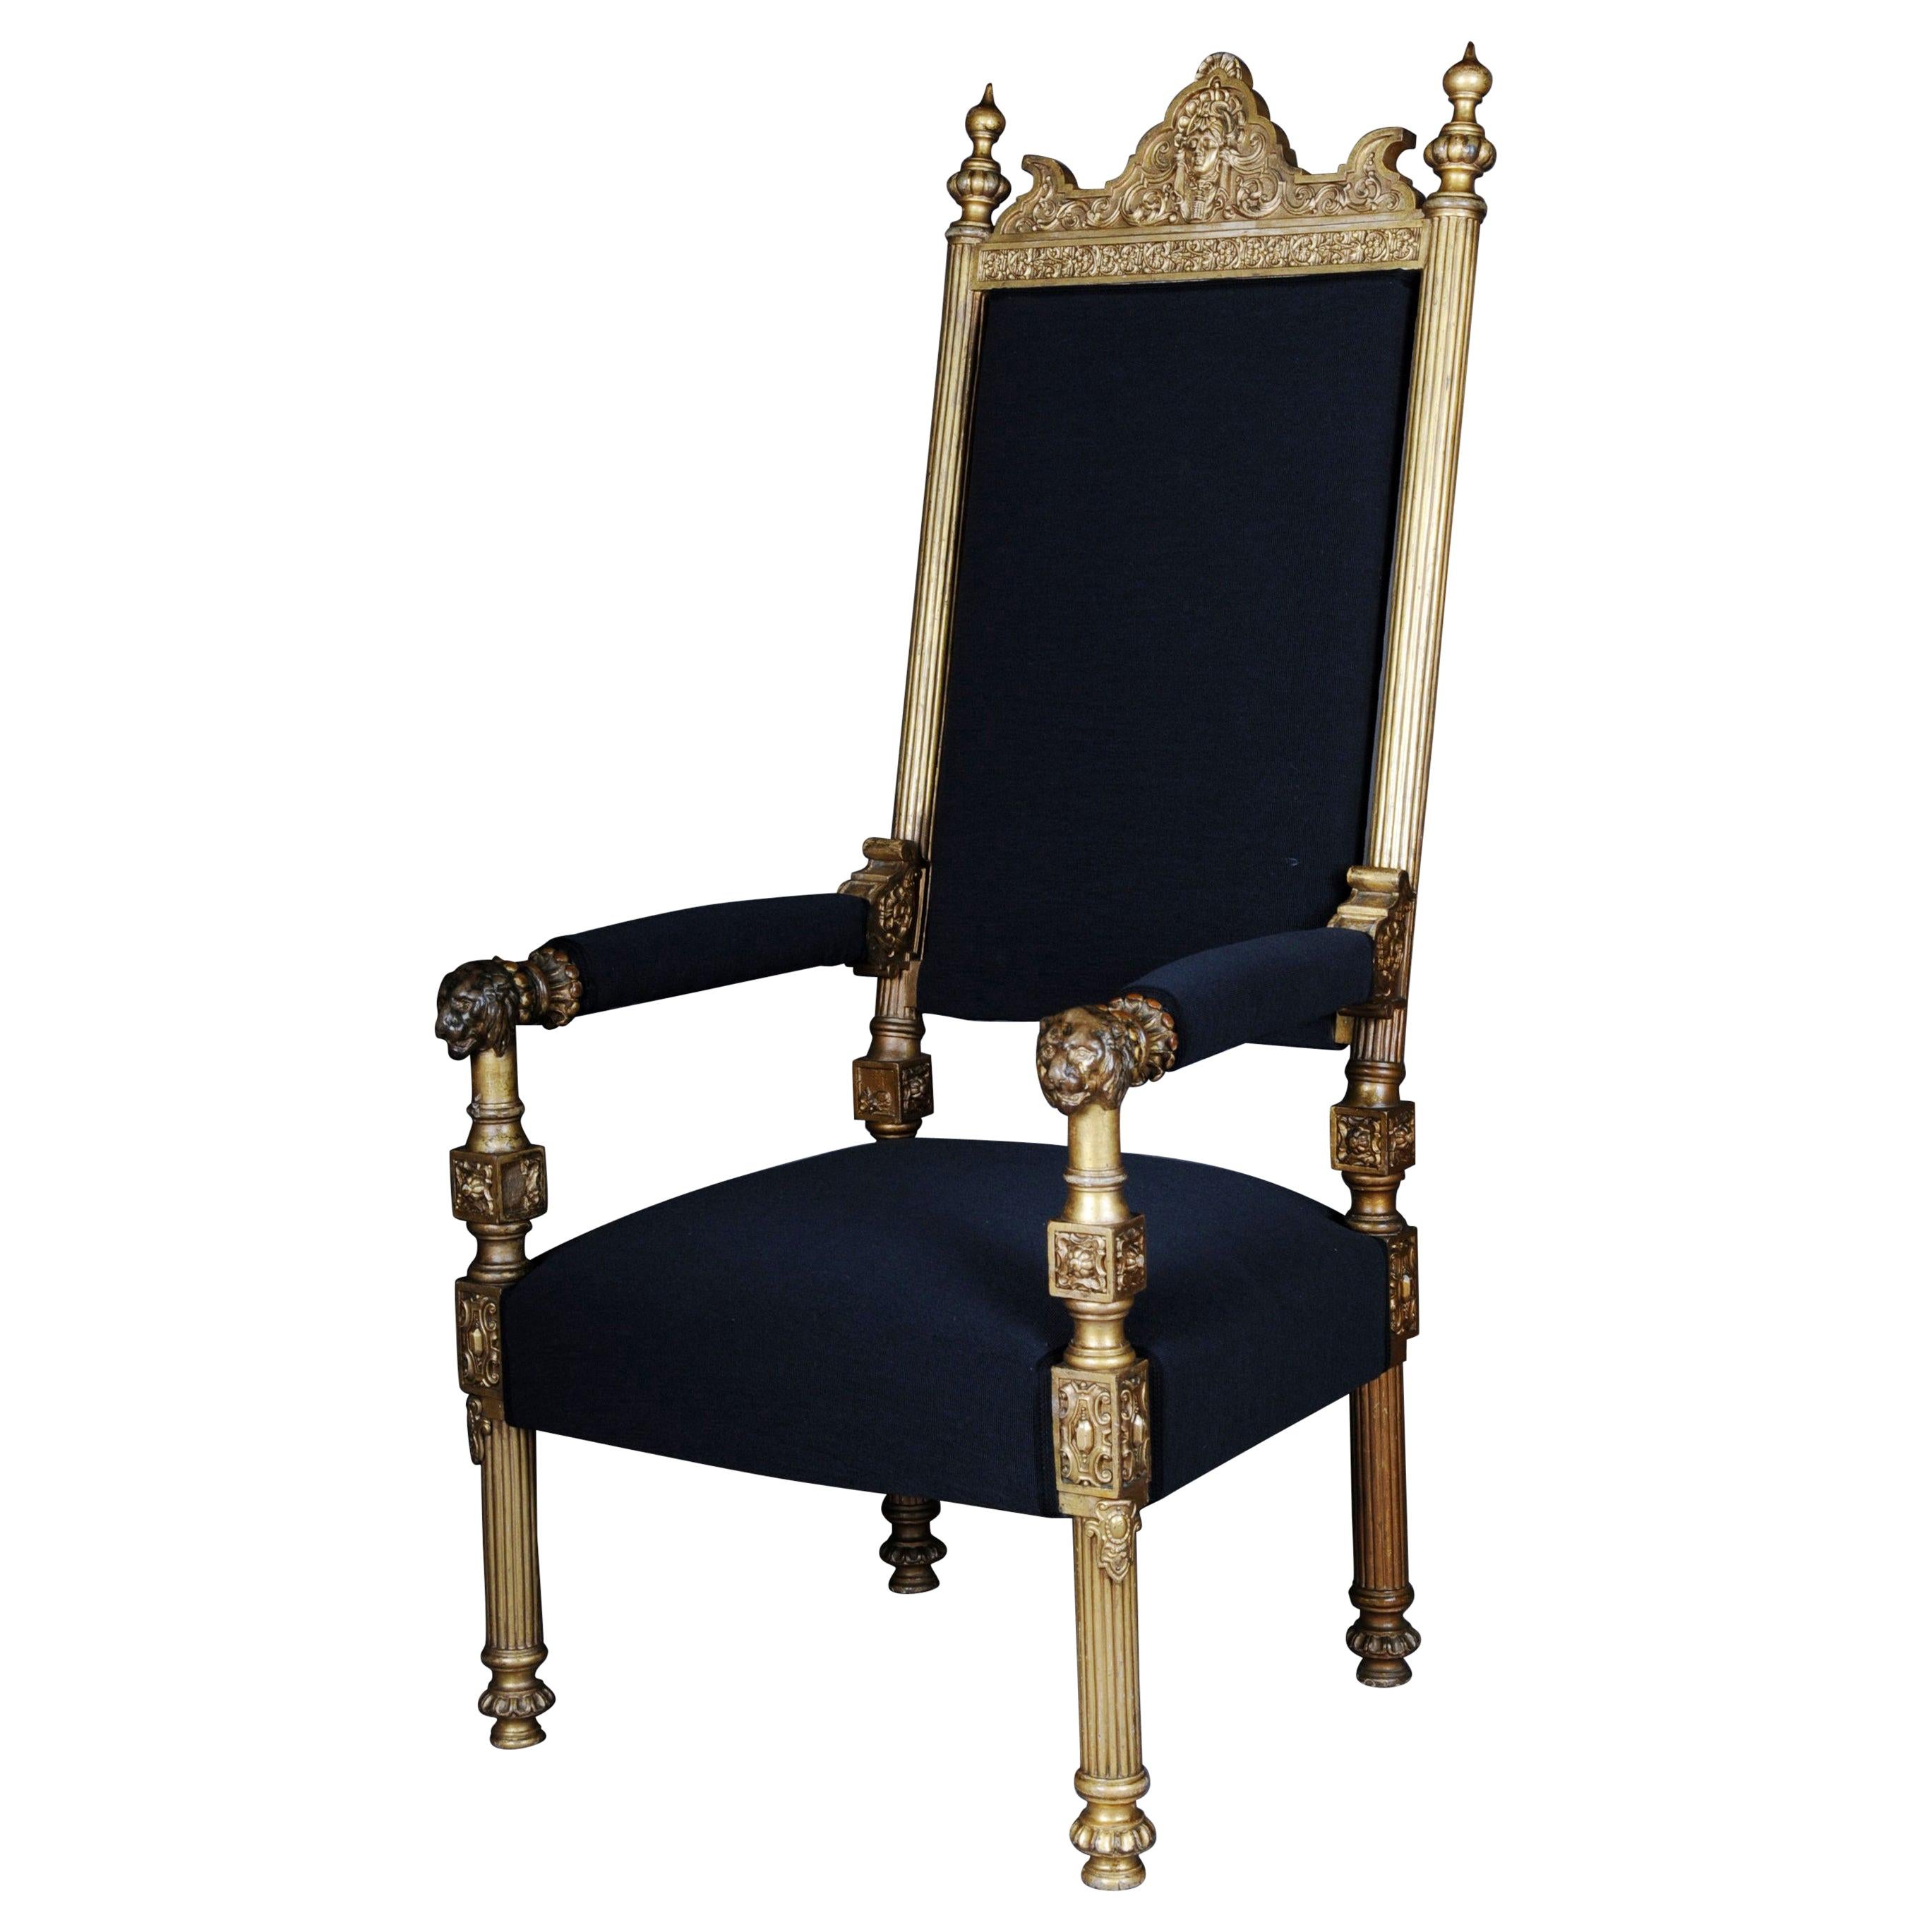 Fauteuil trône du milieu du XIXe siècle Probablement design de Johann Heinrich Strack